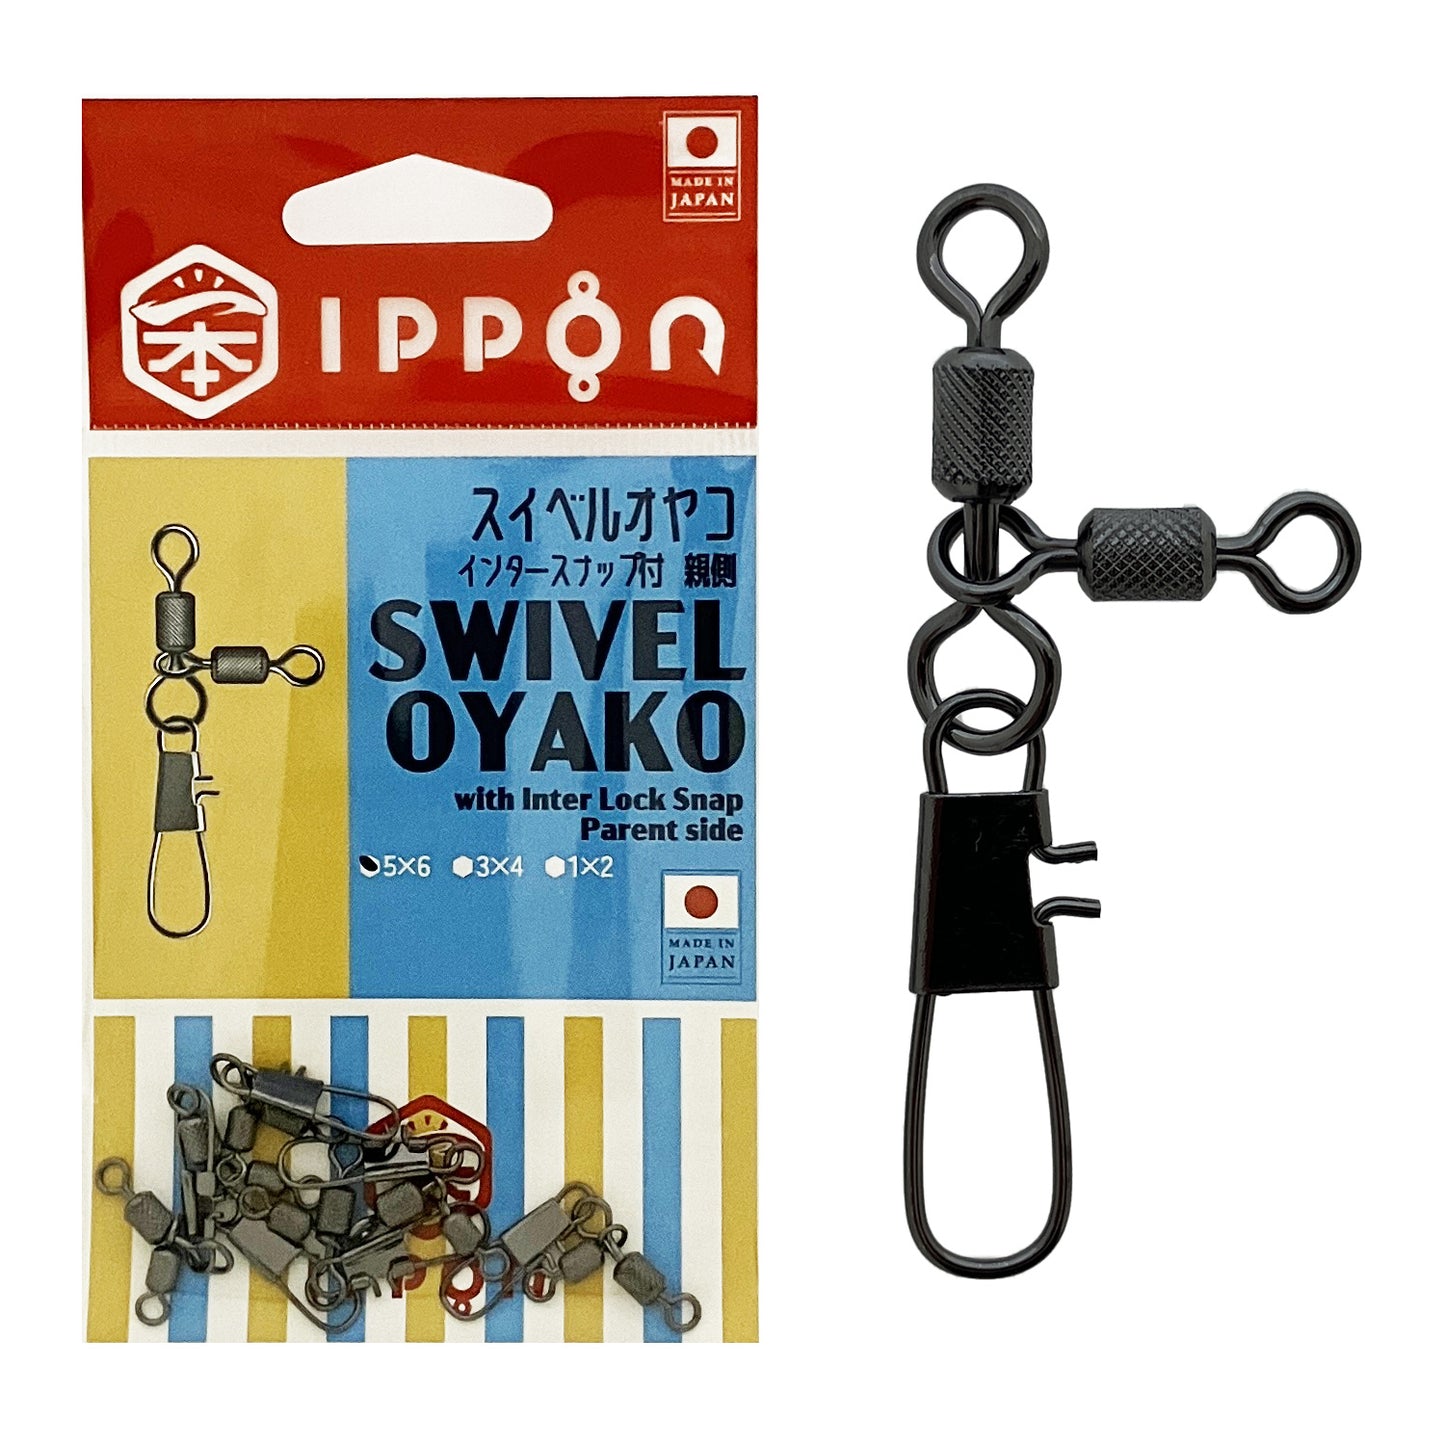 IPPON (一本) スイベルオヤコ インタースナップ付 親側 日本製